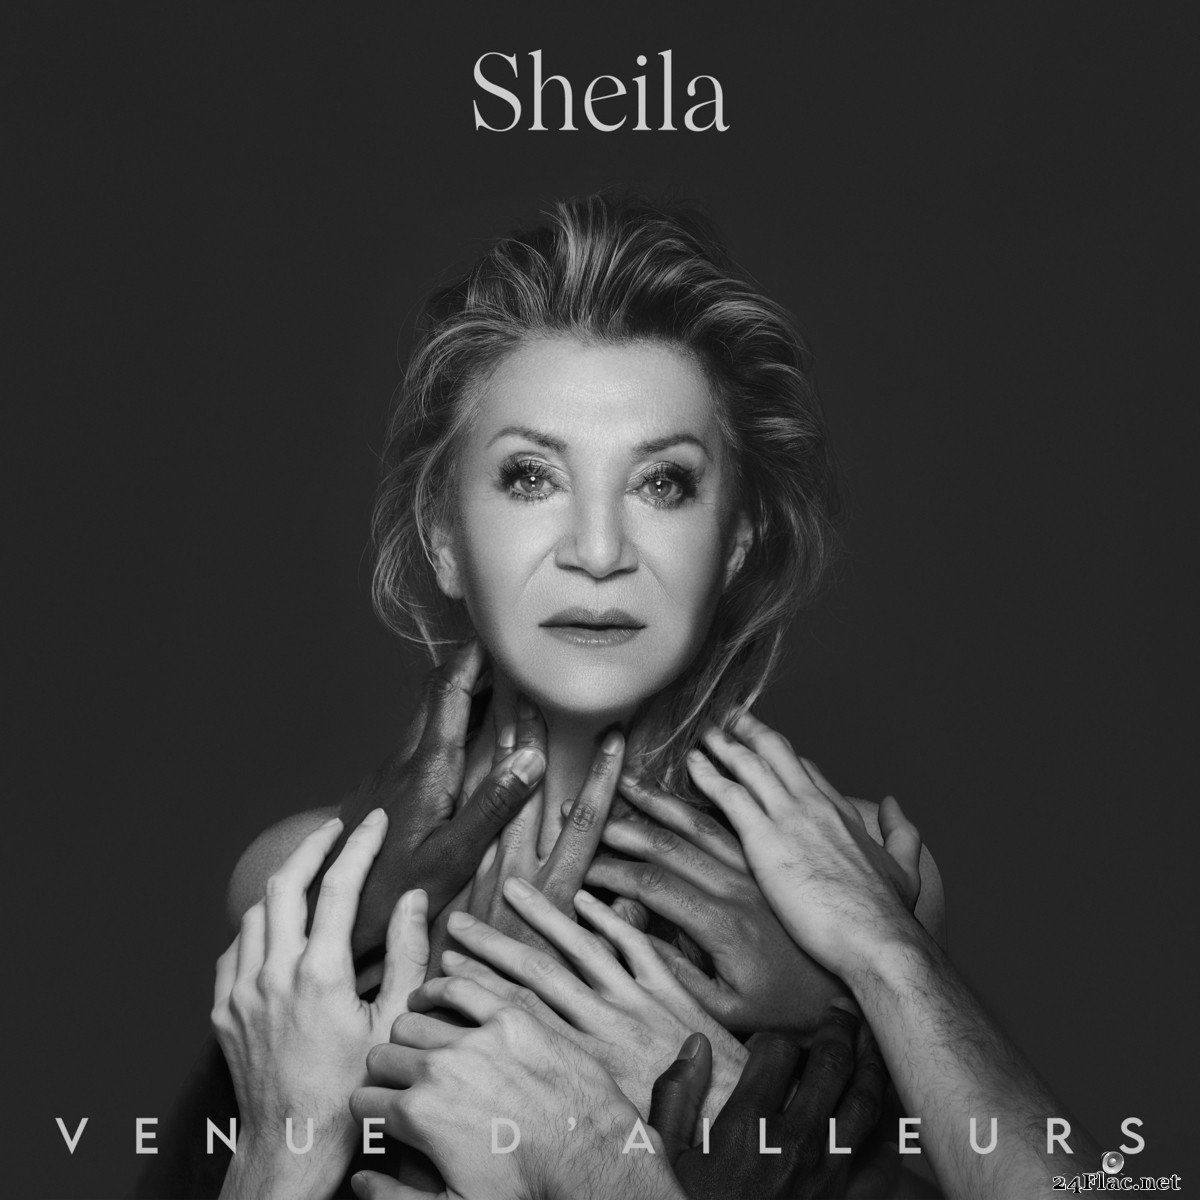 Sheila - Venue d’ailleurs (2021) FLAC